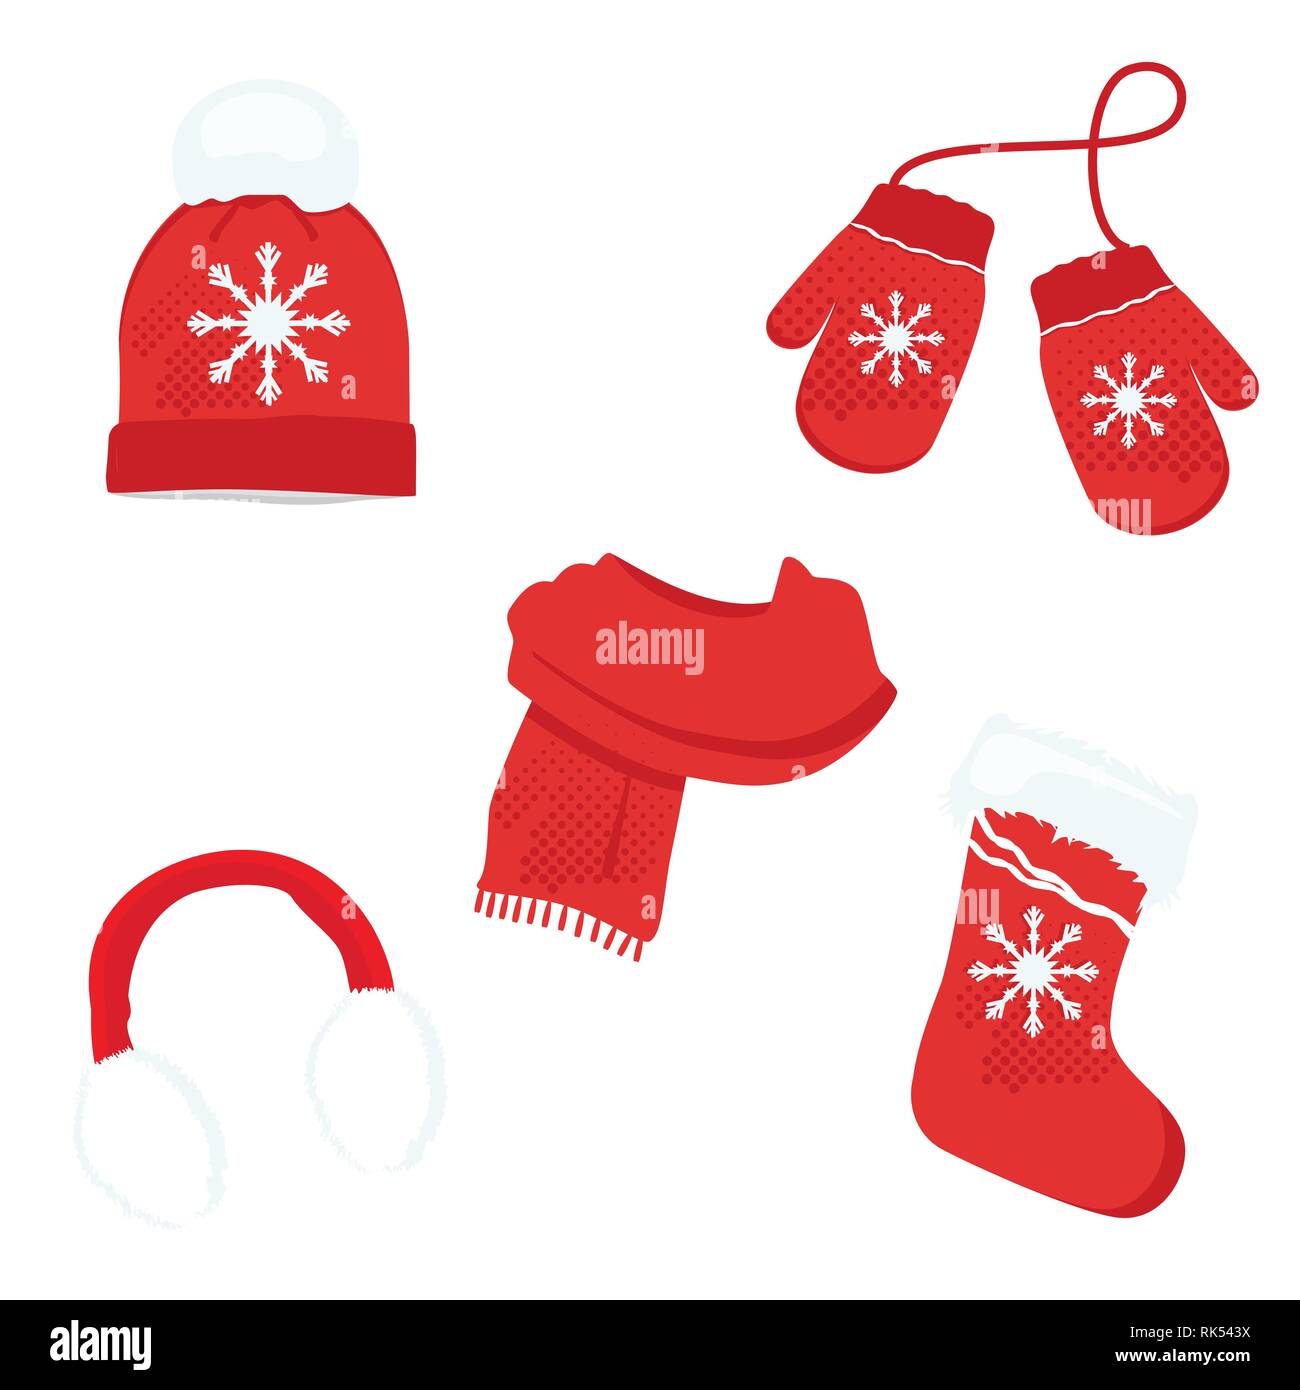 Red Winter Kleidung mit Schneeflocken. Strickmütze, Weihnachten Socke,  Ohrenschützer Schal und Handschuhe. Vektor Icon Set Stock-Vektorgrafik -  Alamy